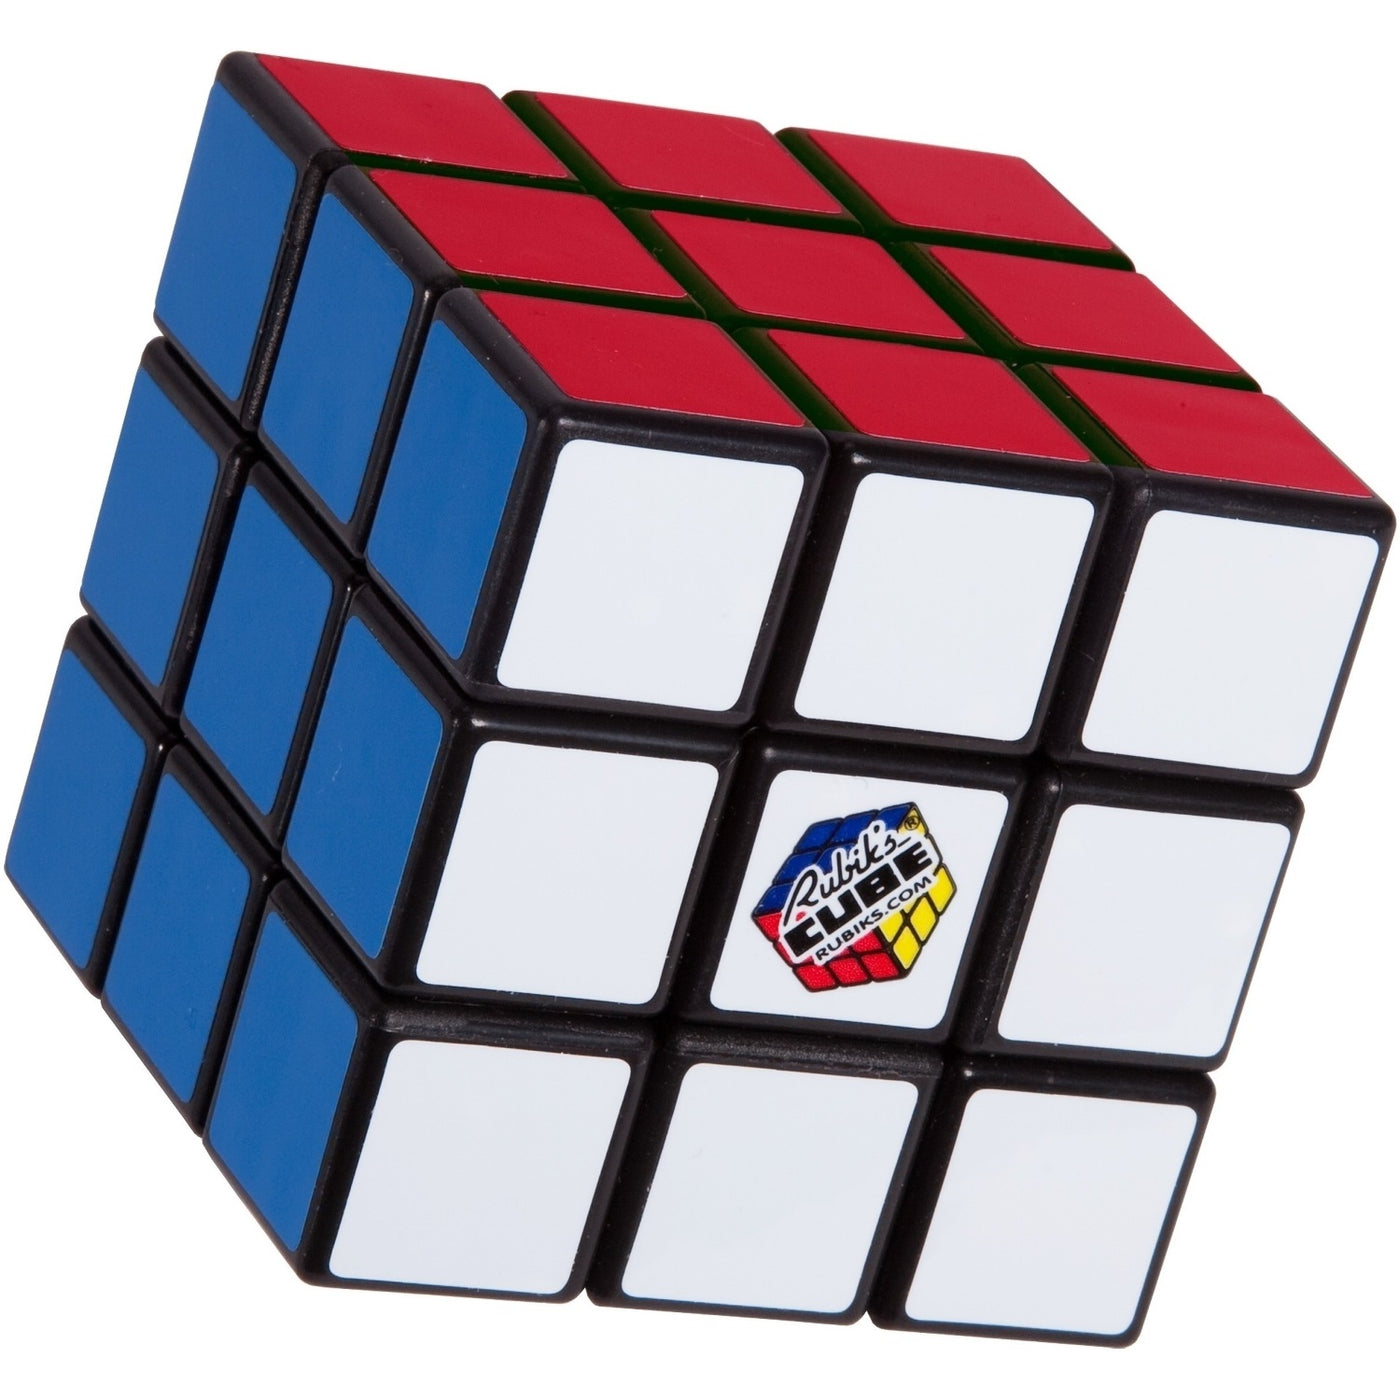 Rubiks original